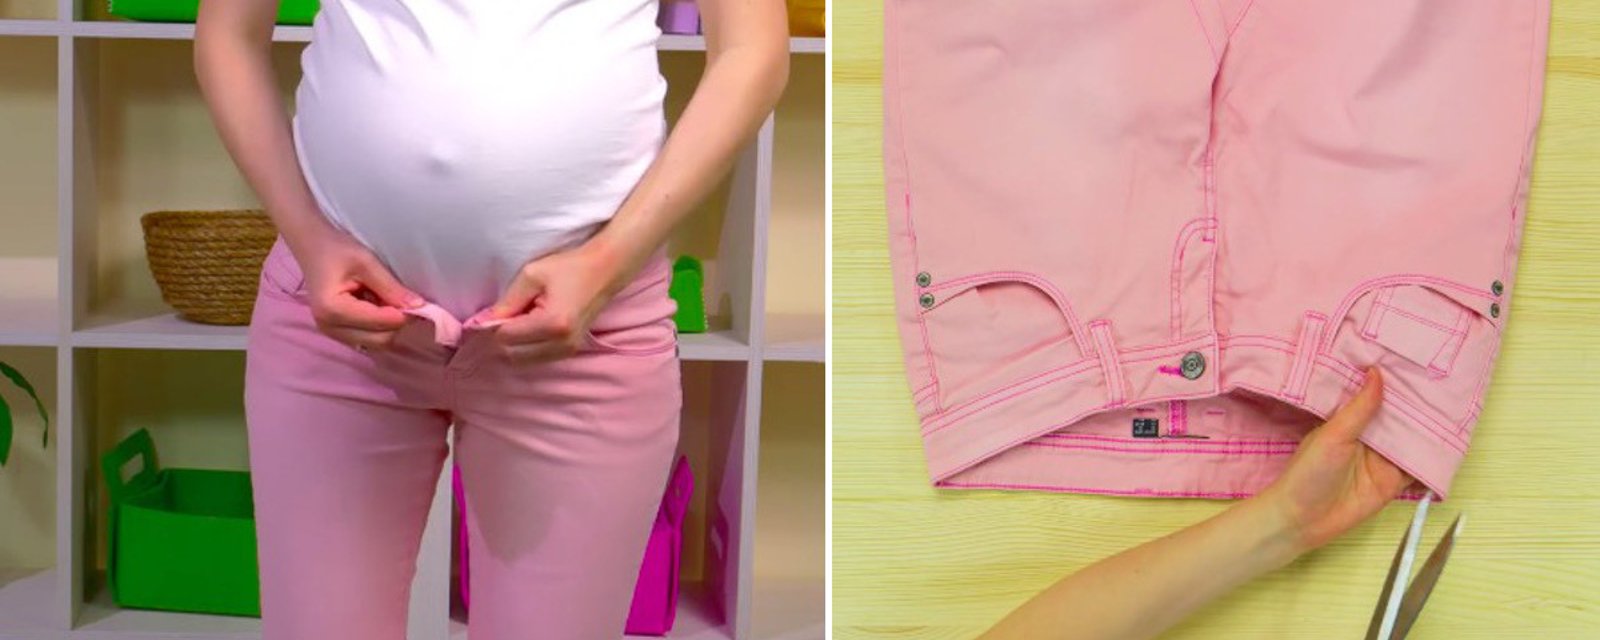 Modifiez un pantalon facilement afin de pouvoir le porter jusqu'à la fin de votre grossesse